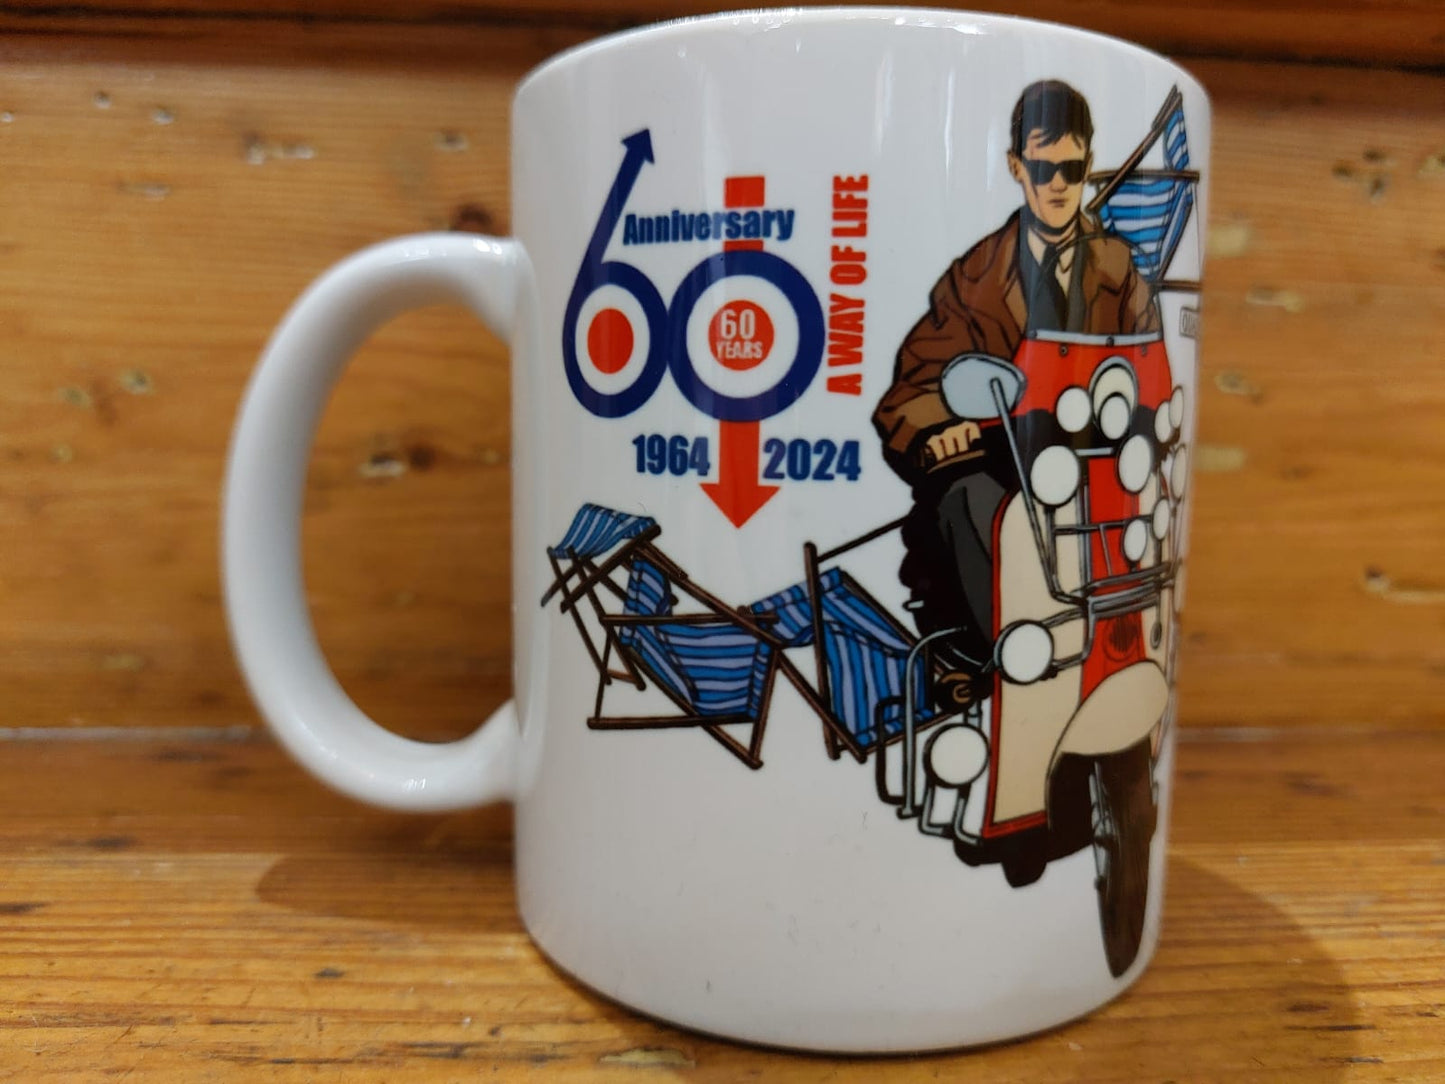 Quadrophenia Alley 60th Anniversary Mug + Pin Badge Set